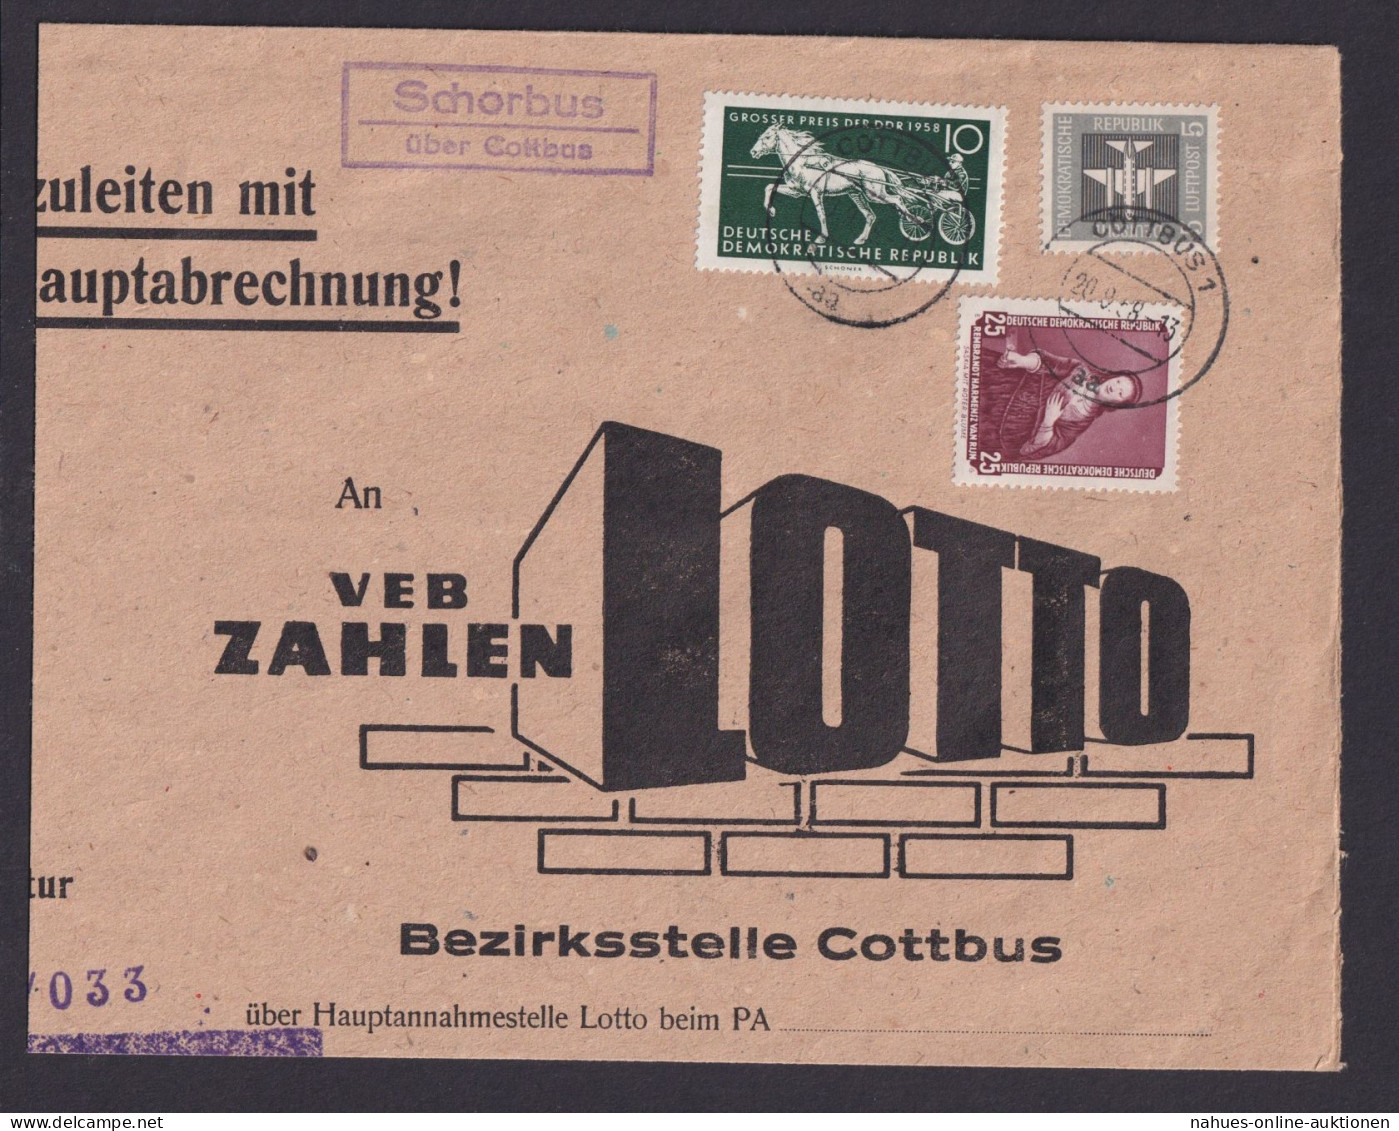 Schorbus über Cottbus Brandenburg DDR Brief Landpoststempel MIF N. Cottbus - Covers & Documents